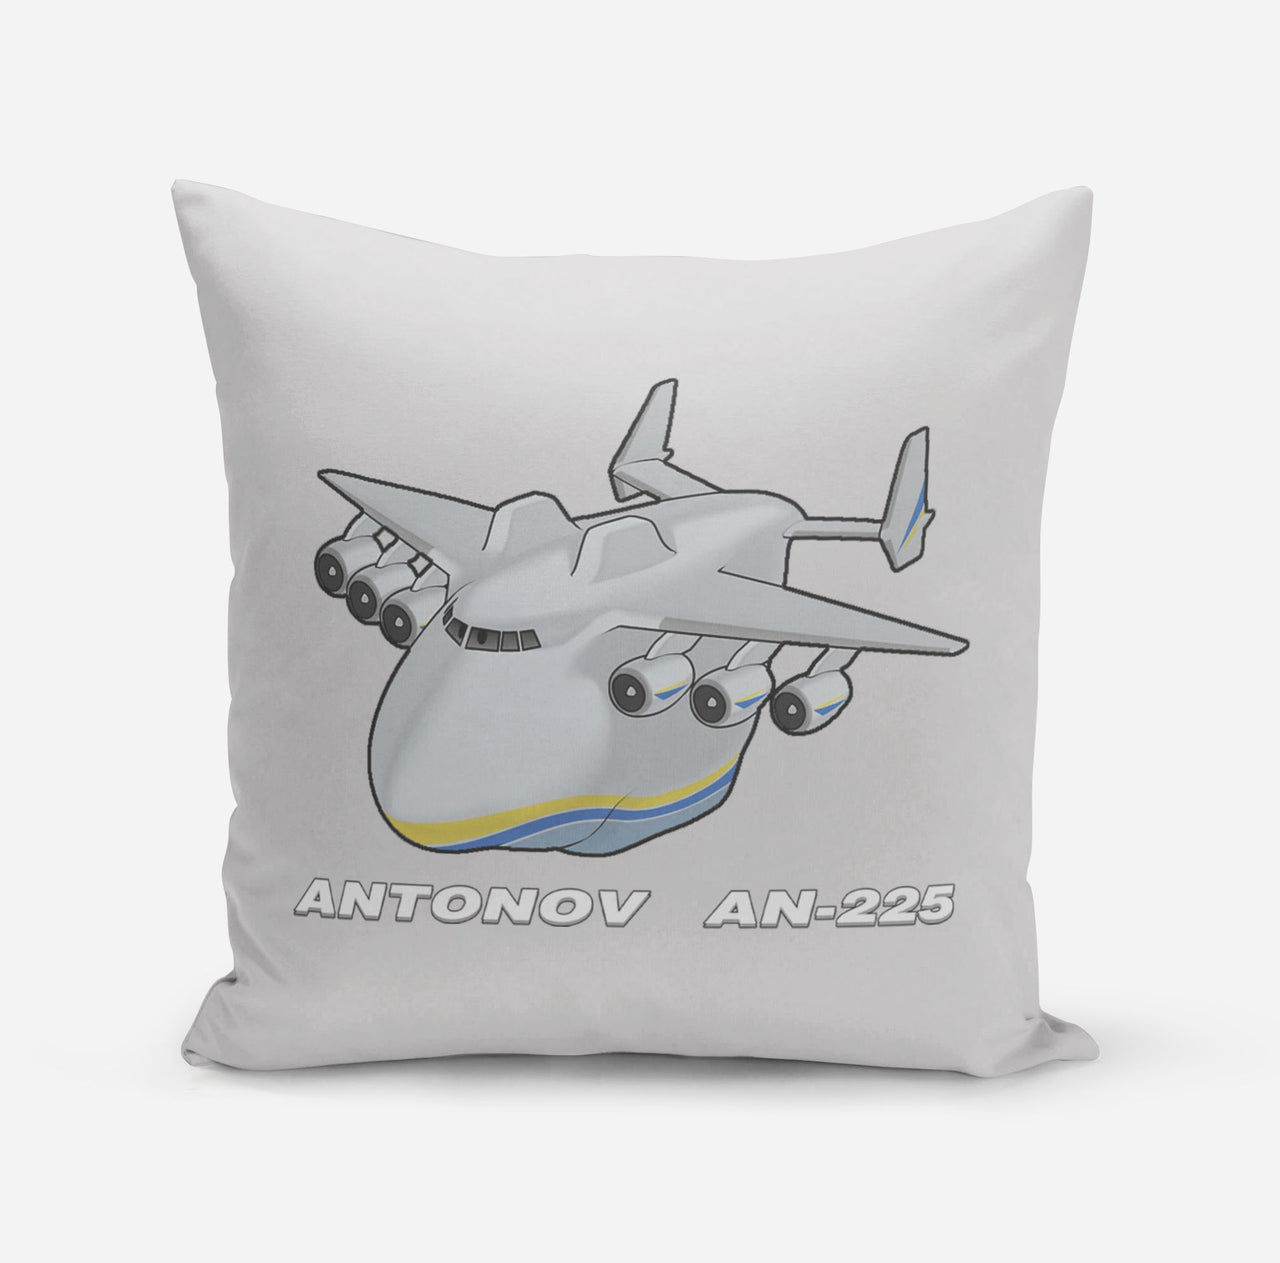 Antonov AN-225 (29) Designed Pillows